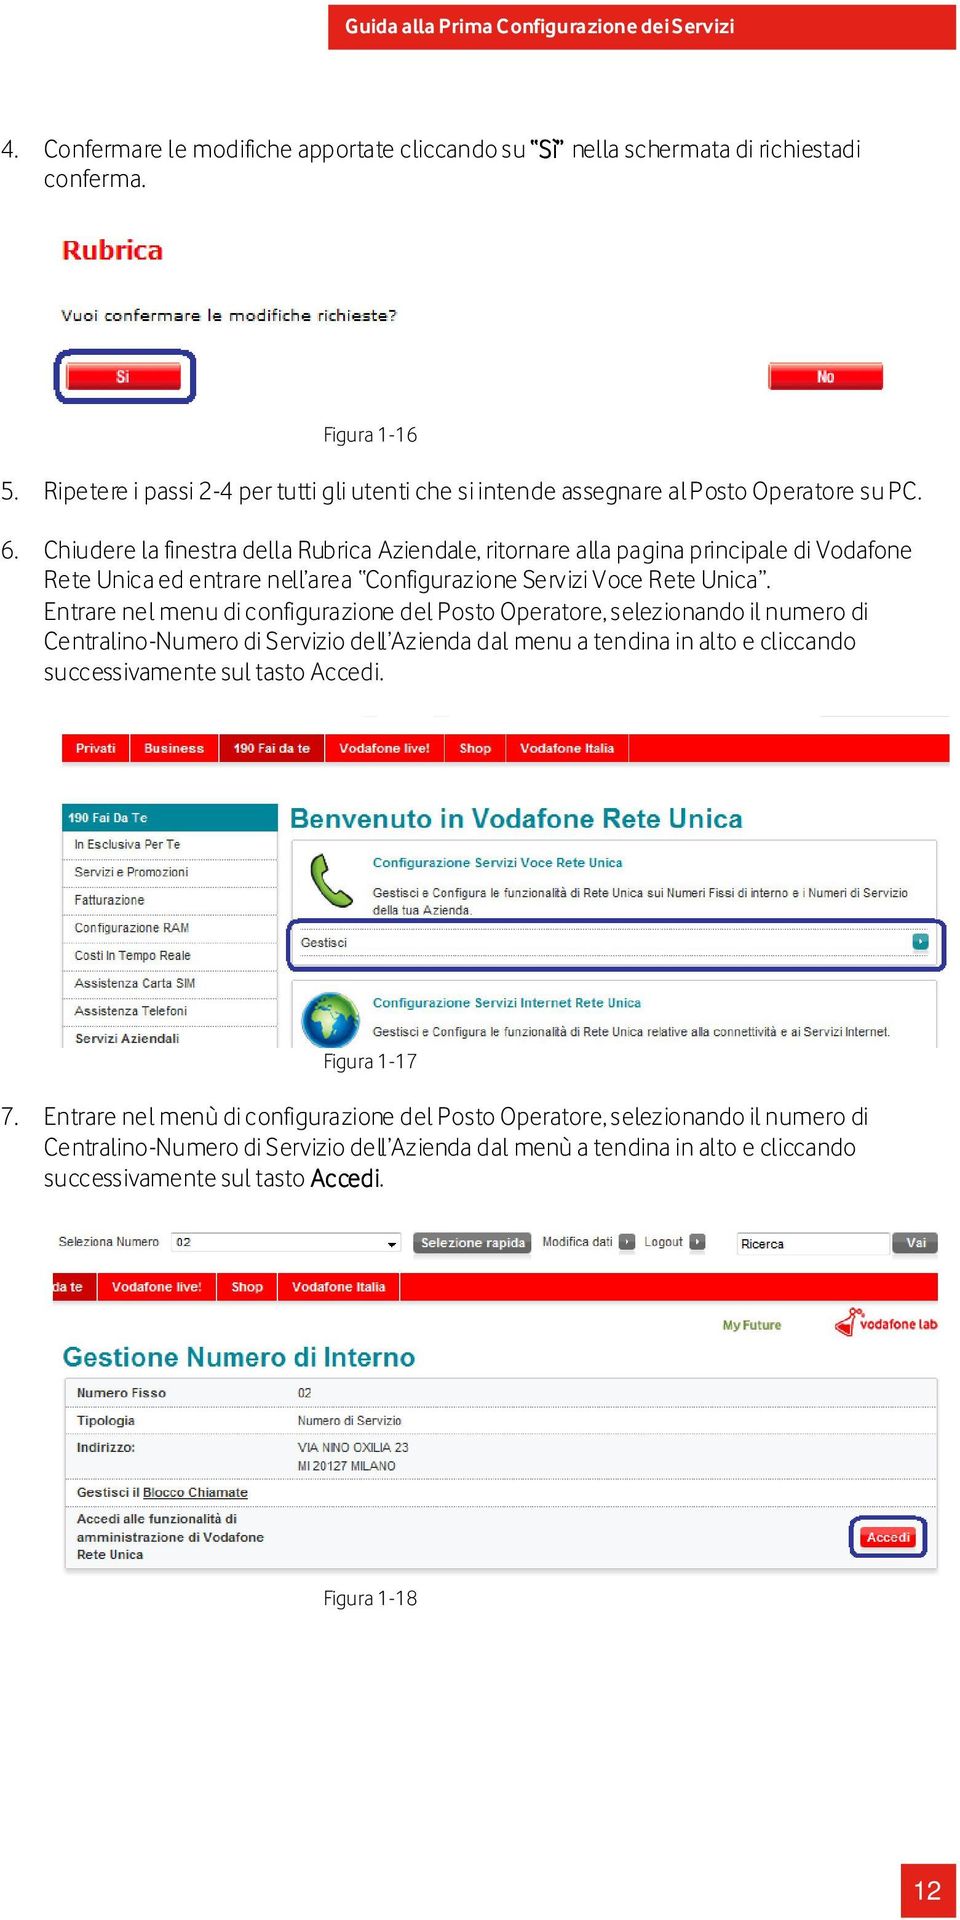 Chiudere la finestra della Rubrica Aziendale, ritornare alla pagina principale di Vodafone Rete Unica ed entrare nell area Configurazione Servizi Voce Rete Unica.